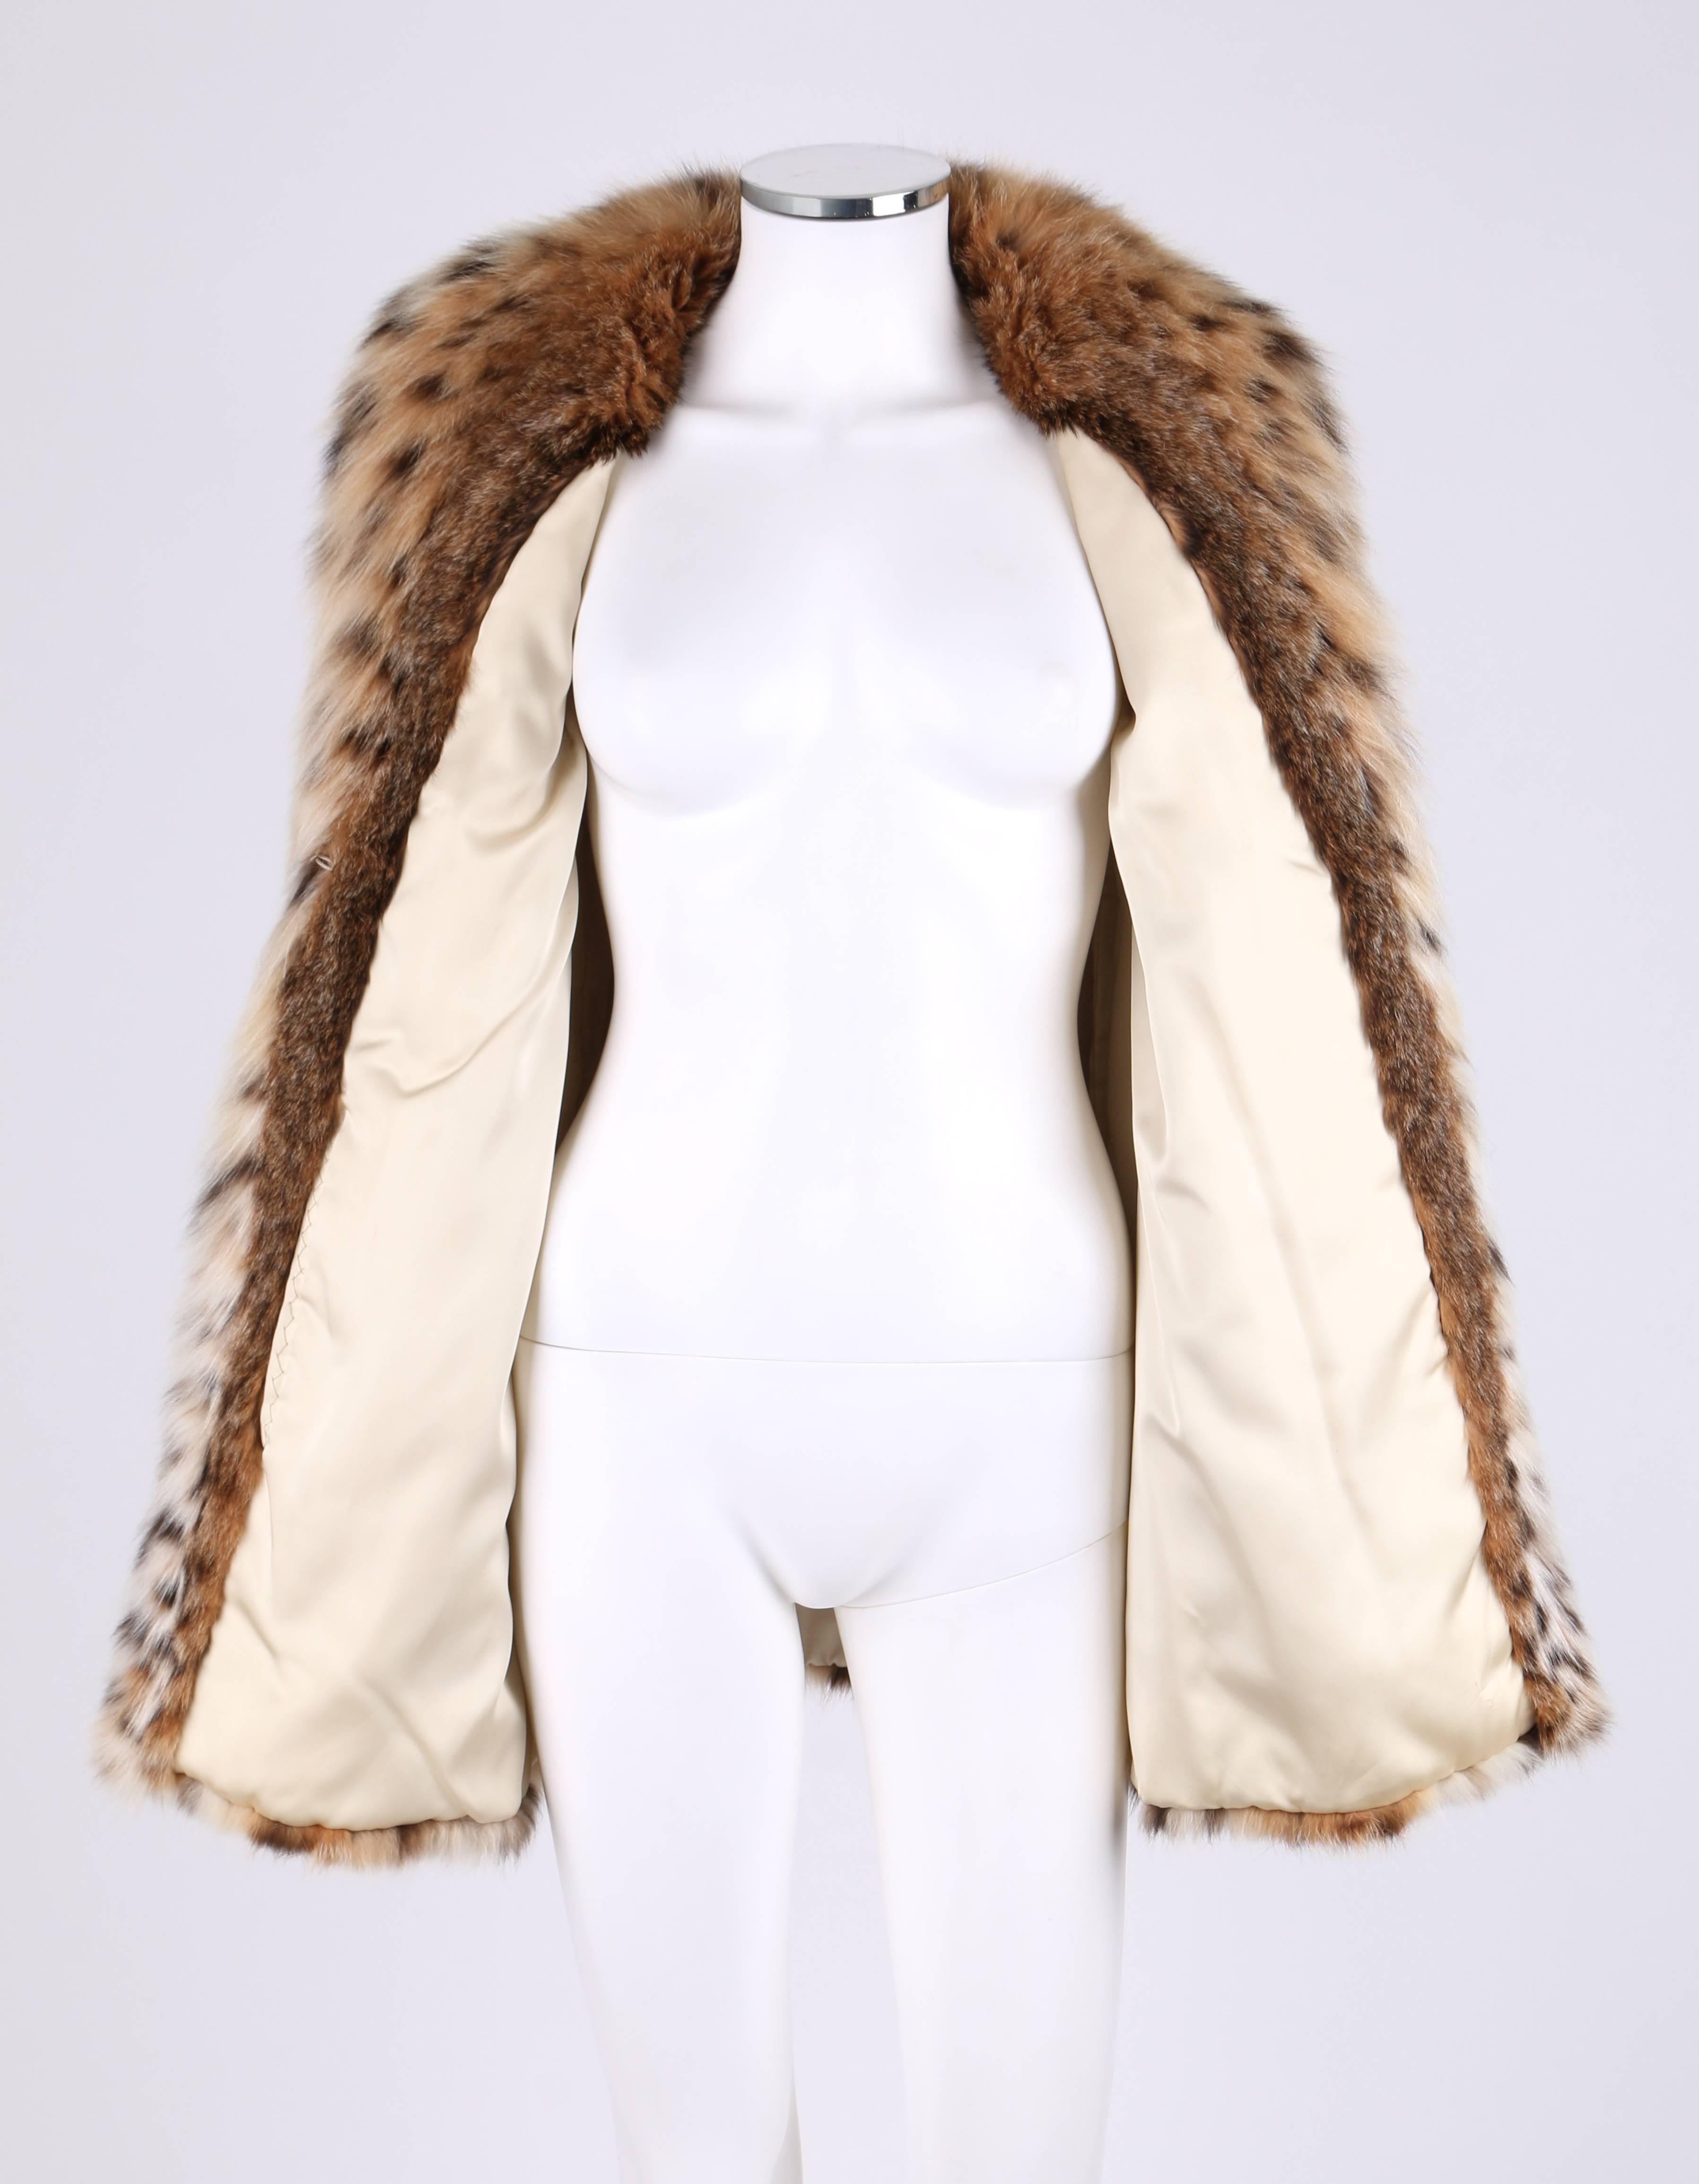 Brown GENUINE BOBCAT Spotted Fur Large Collar Statement Stroller Coat Jacket